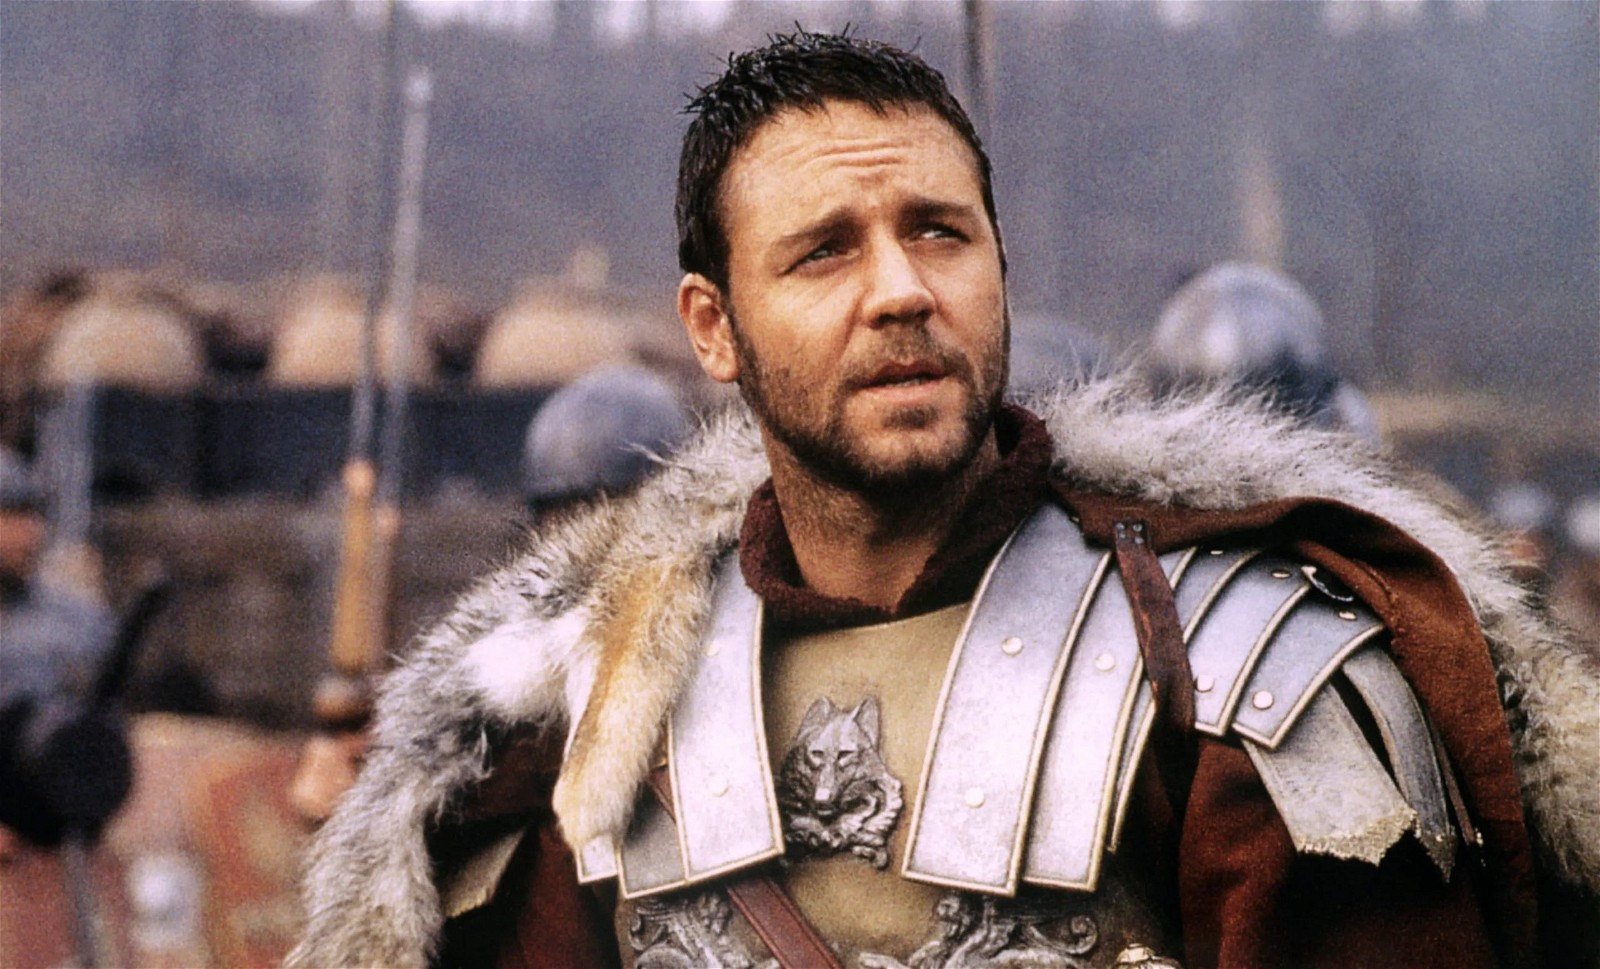 Russell Crowe as Maximus Decimus Meridius in Gladiator | Universal; Pictures